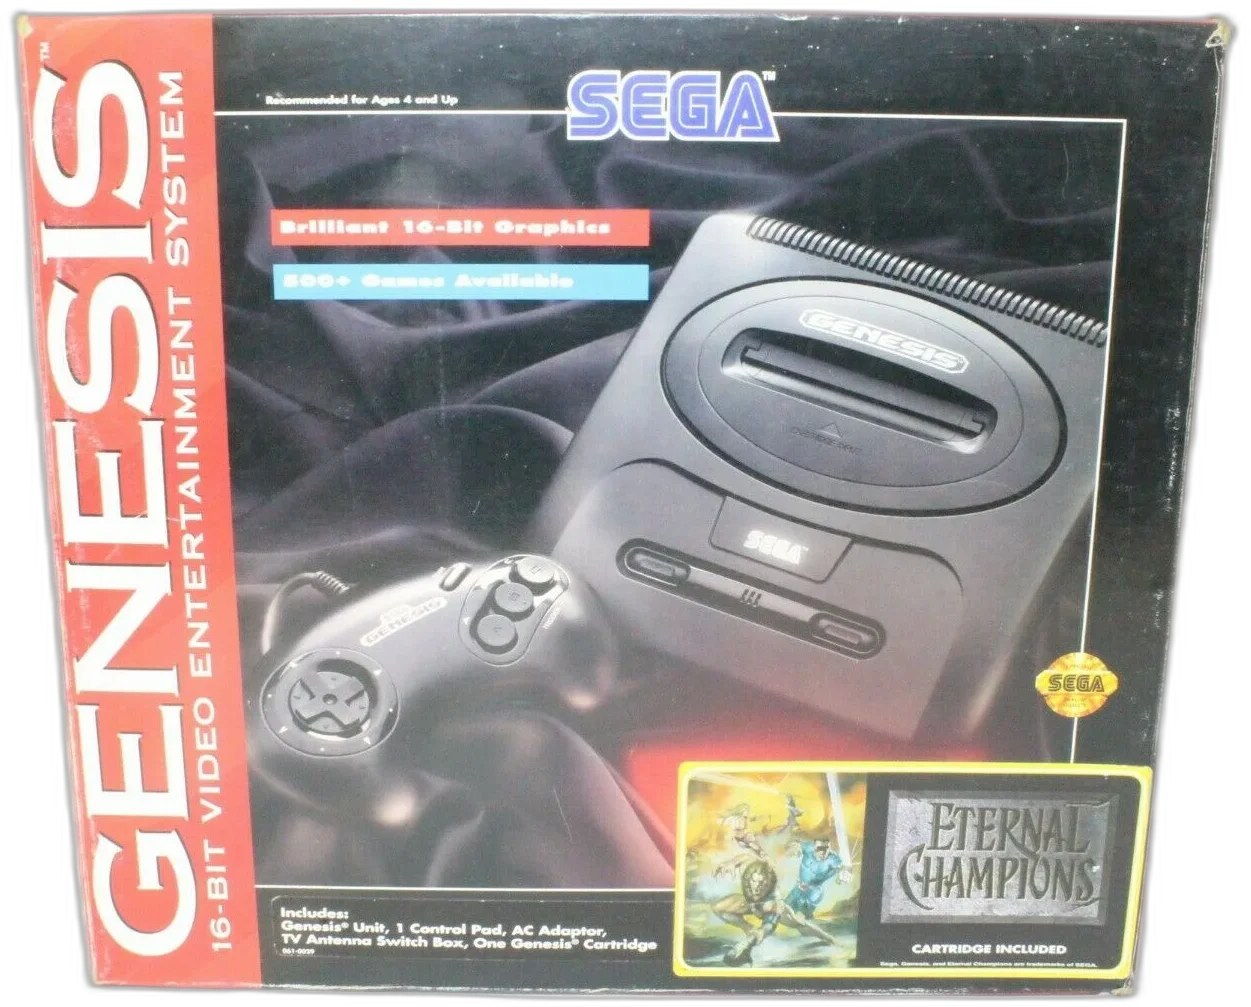  Sega Genesis Model 2 Eternal Champions Bundle